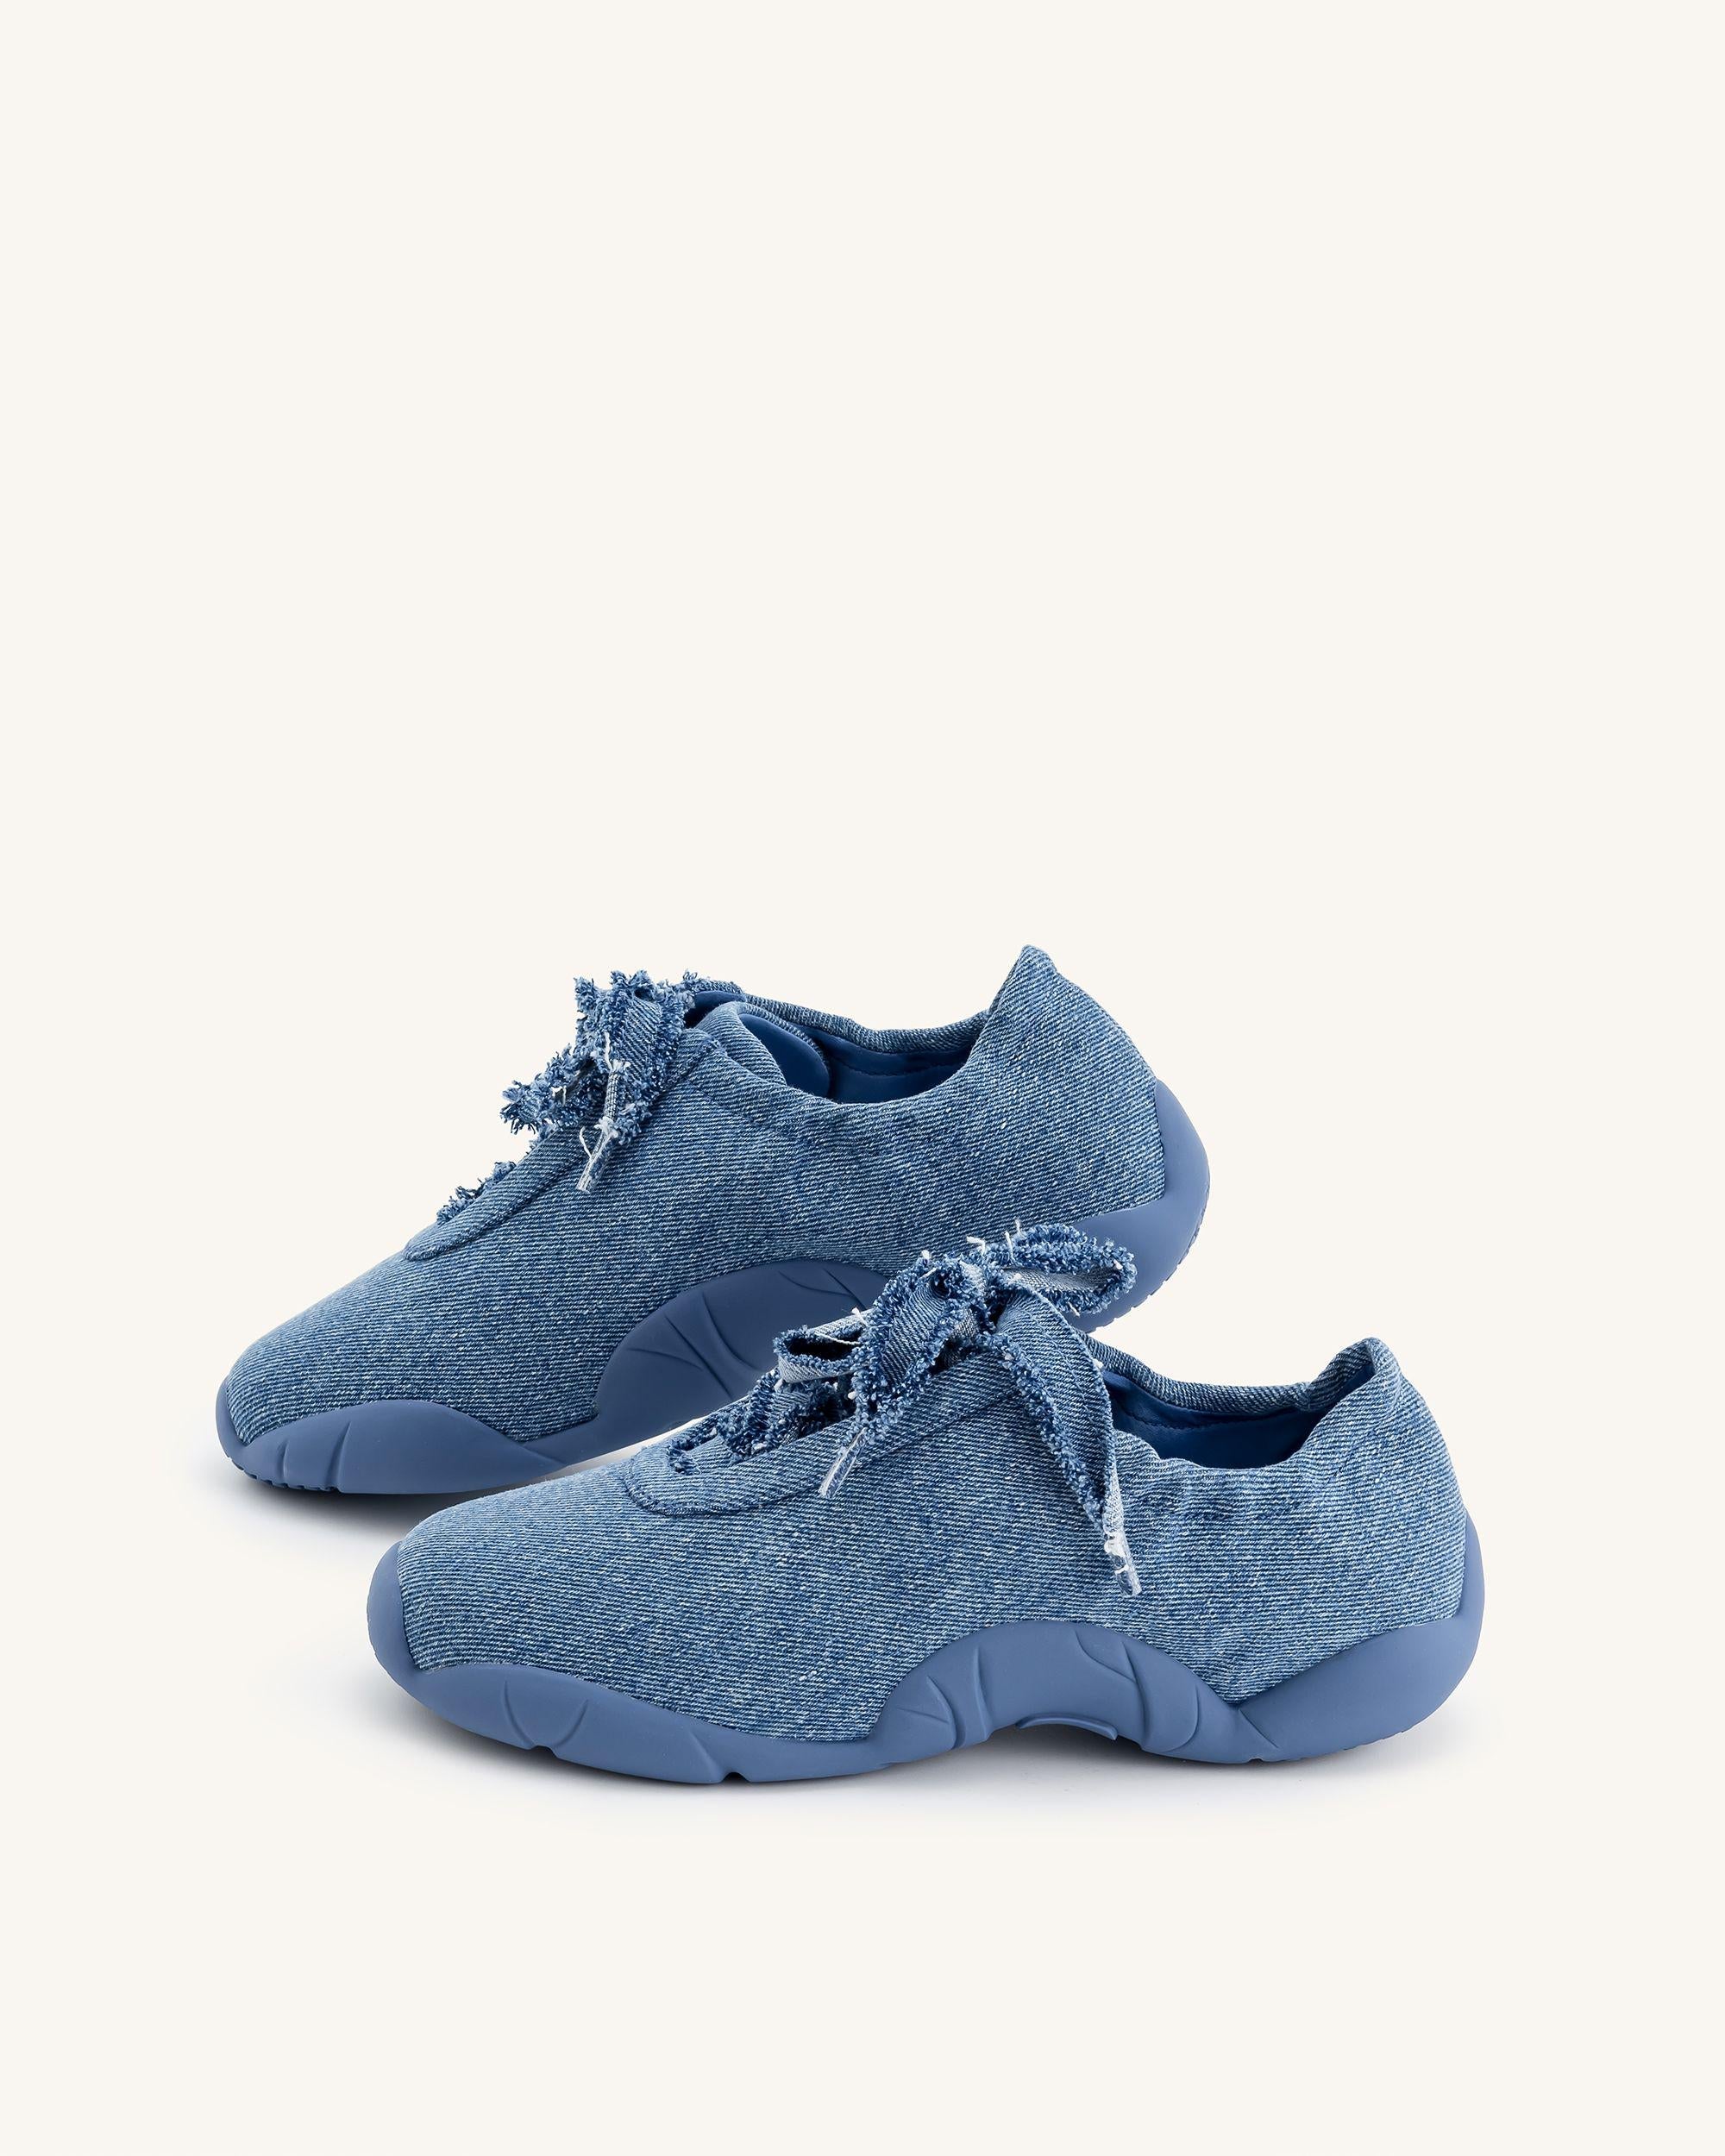 Flavia 芭蕾舞鞋 - 藍色